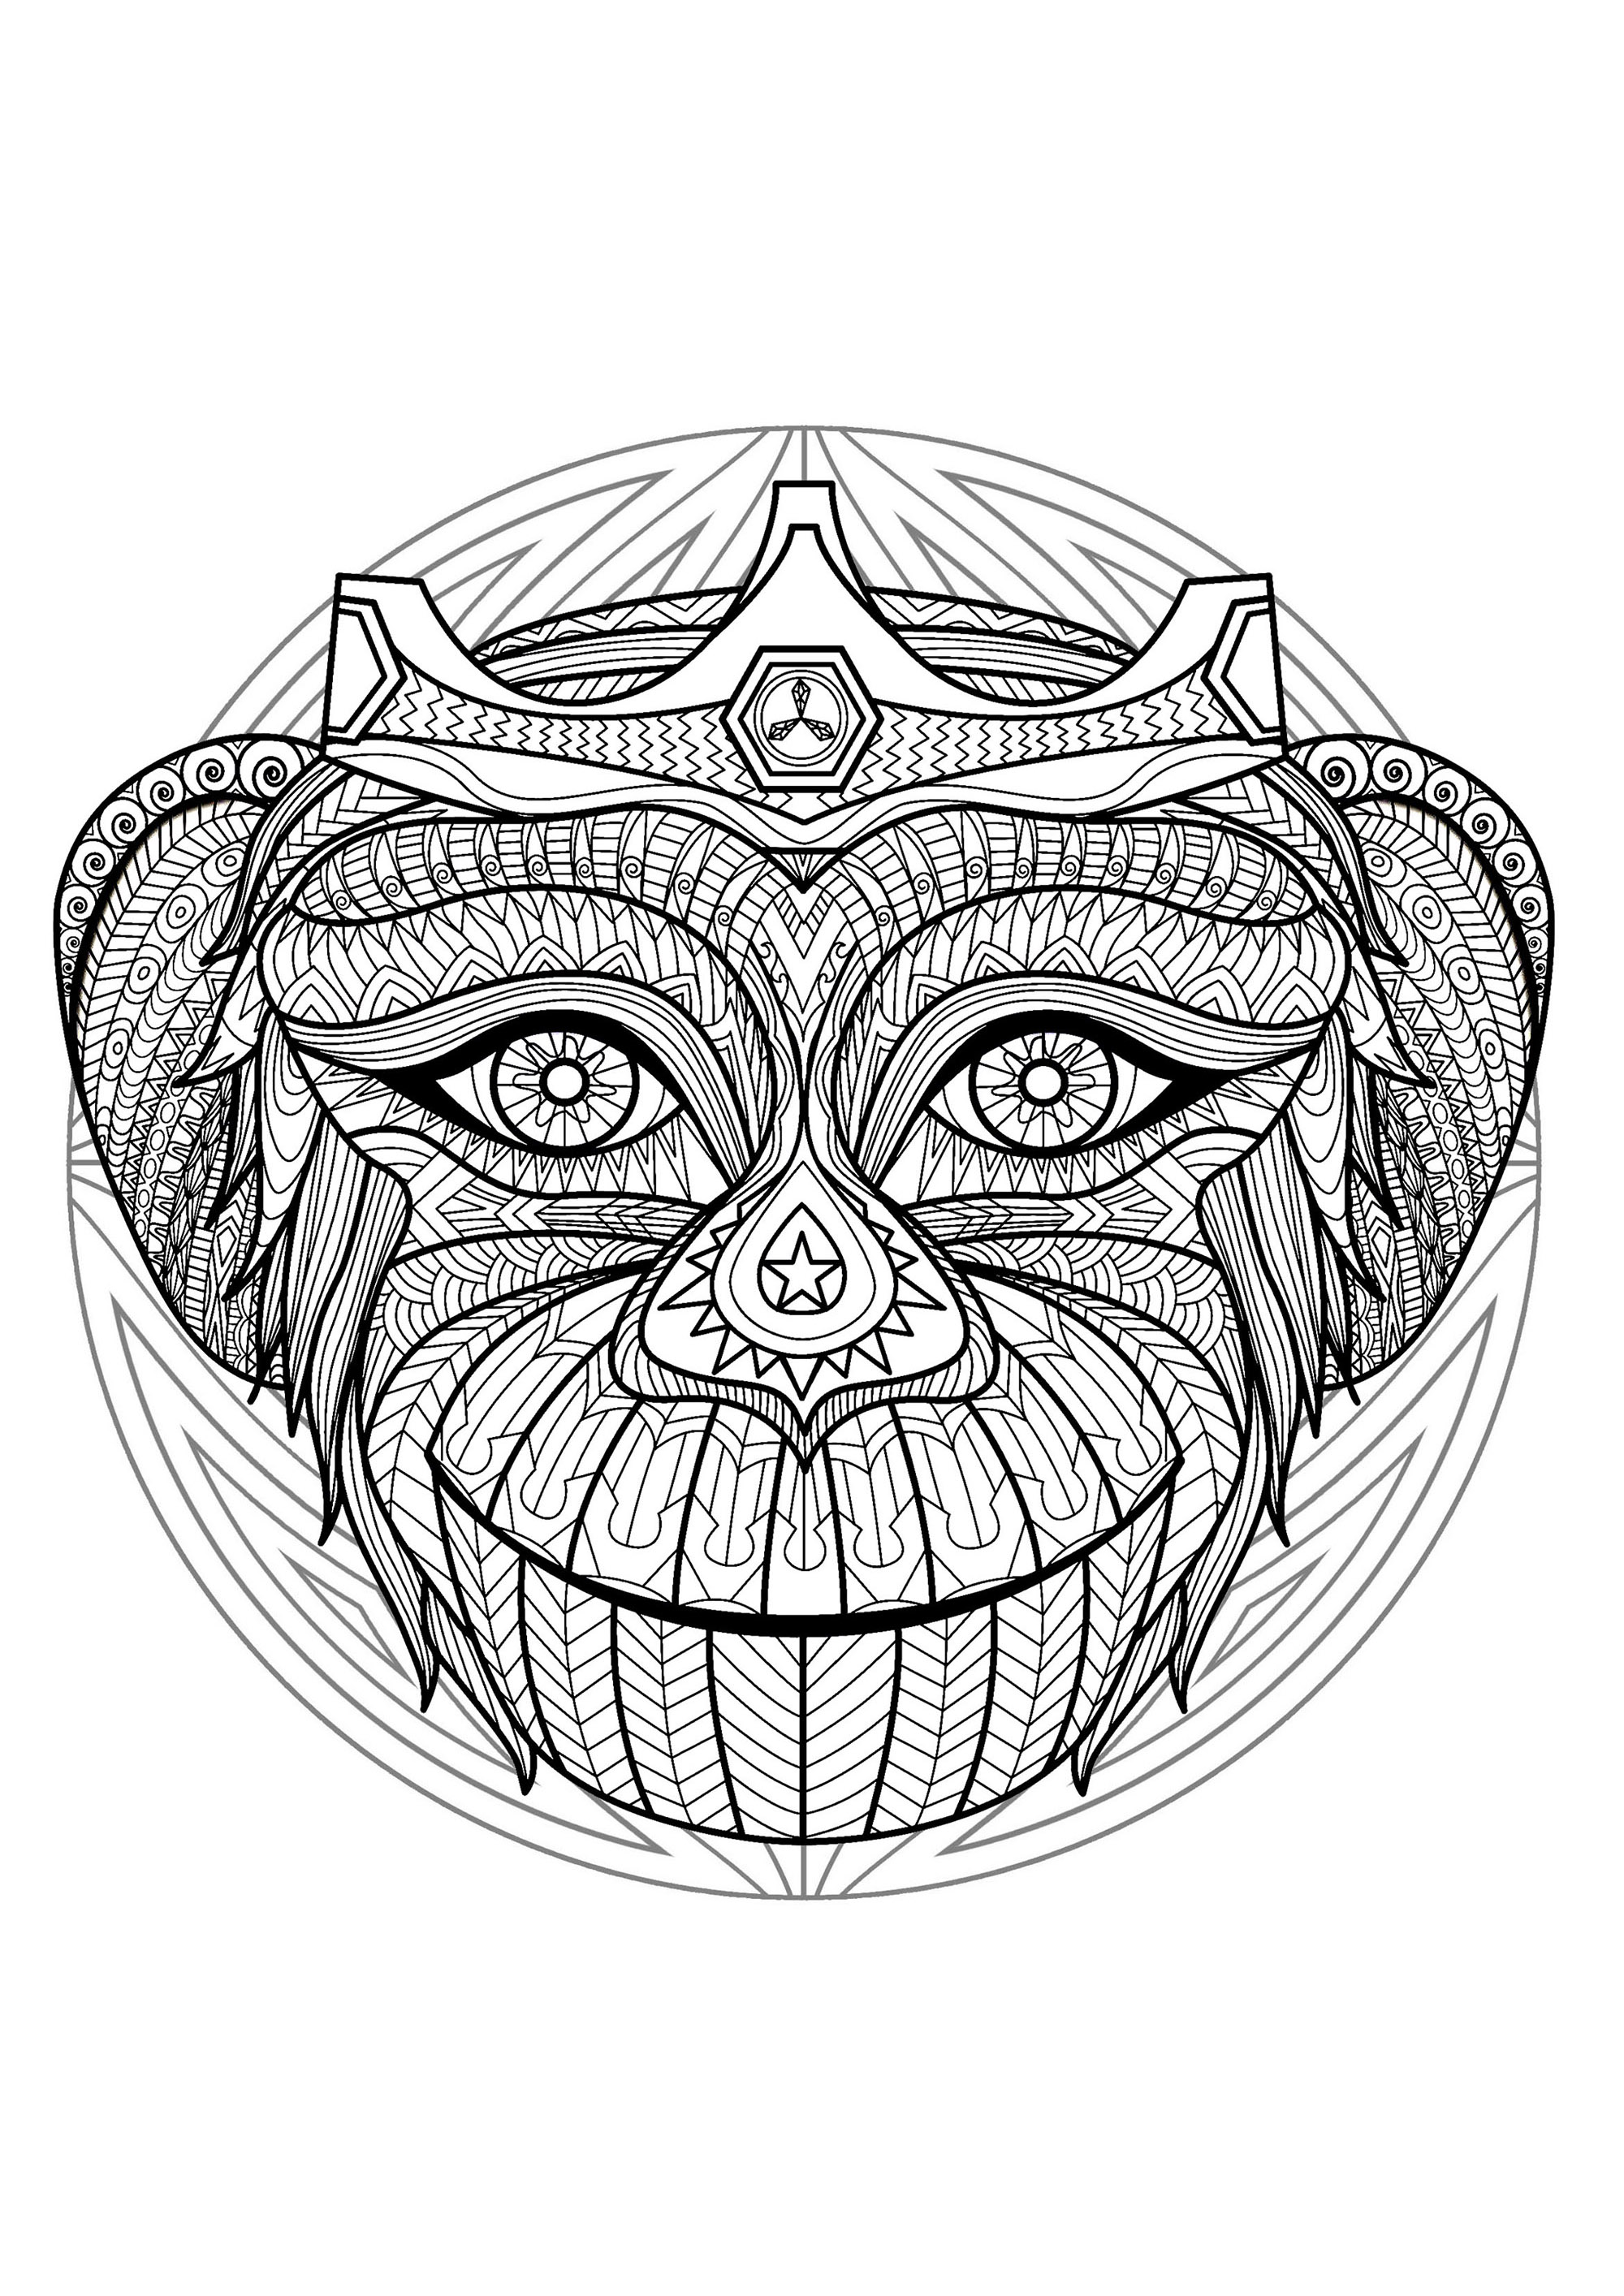 Un Mandala mettant en scène un singe espiègle, pour ceux qui préfèrent mettre en couleur des éléments concrets et vivants. Rétablir la paix en nous, devenir plus créatifs, développer une qualité, favoriser le lâcher prise… C'est ce que permettent les Mandalas.